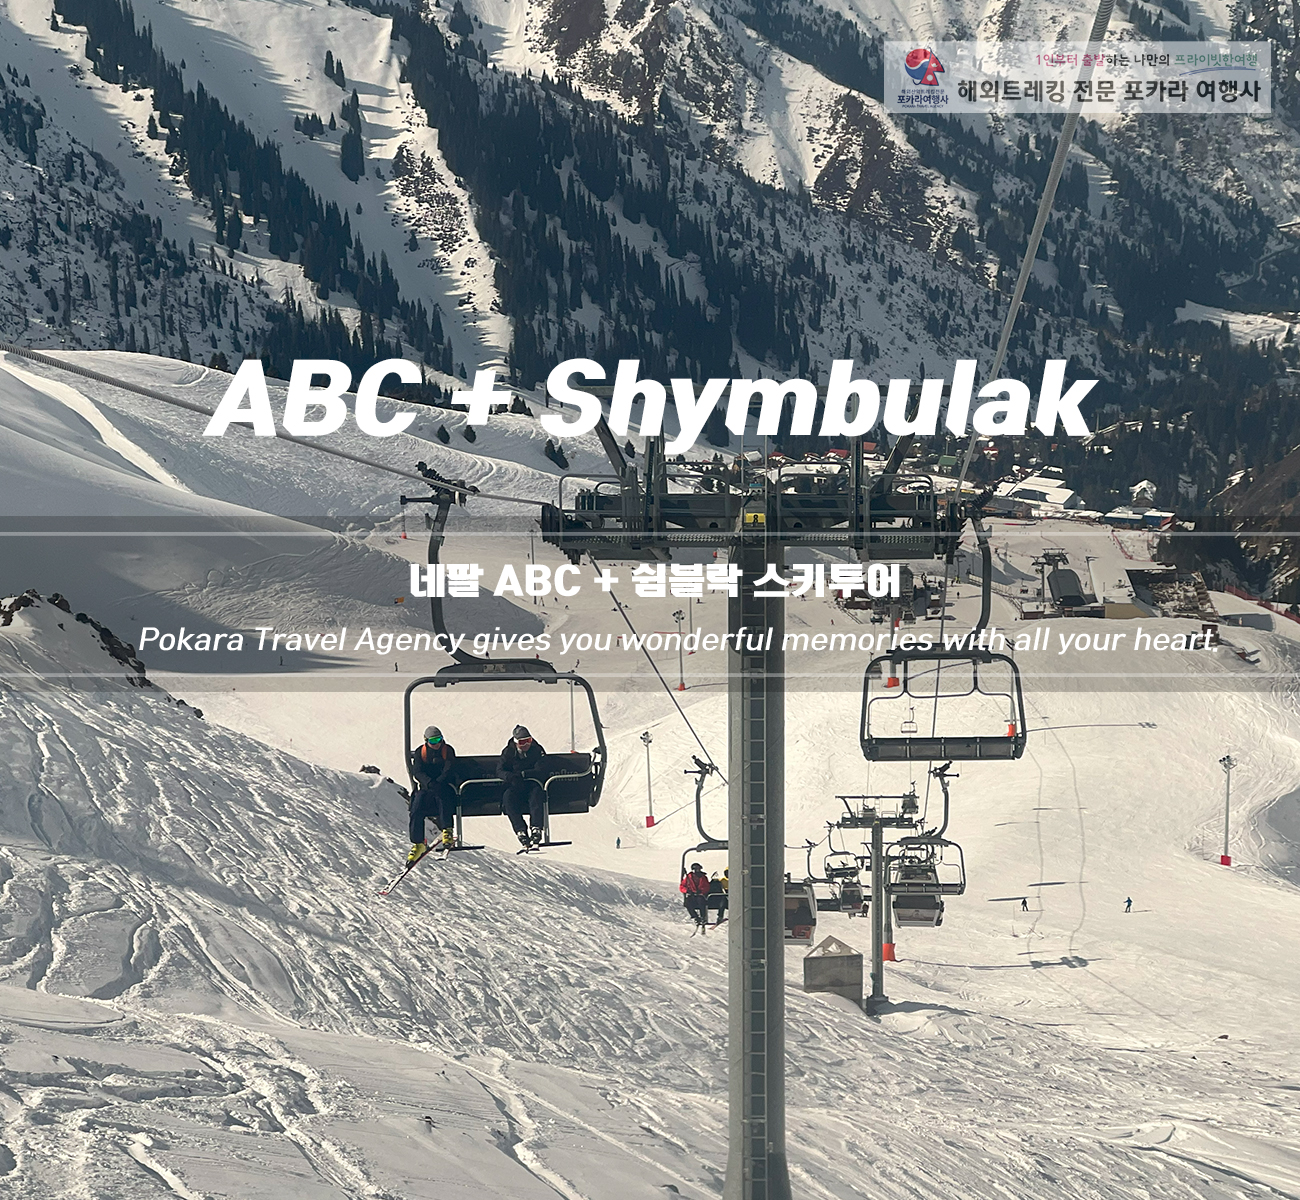 [소그룹/단체] 네팔ABC+중앙아시아 카자흐스탄 스키투어 11일